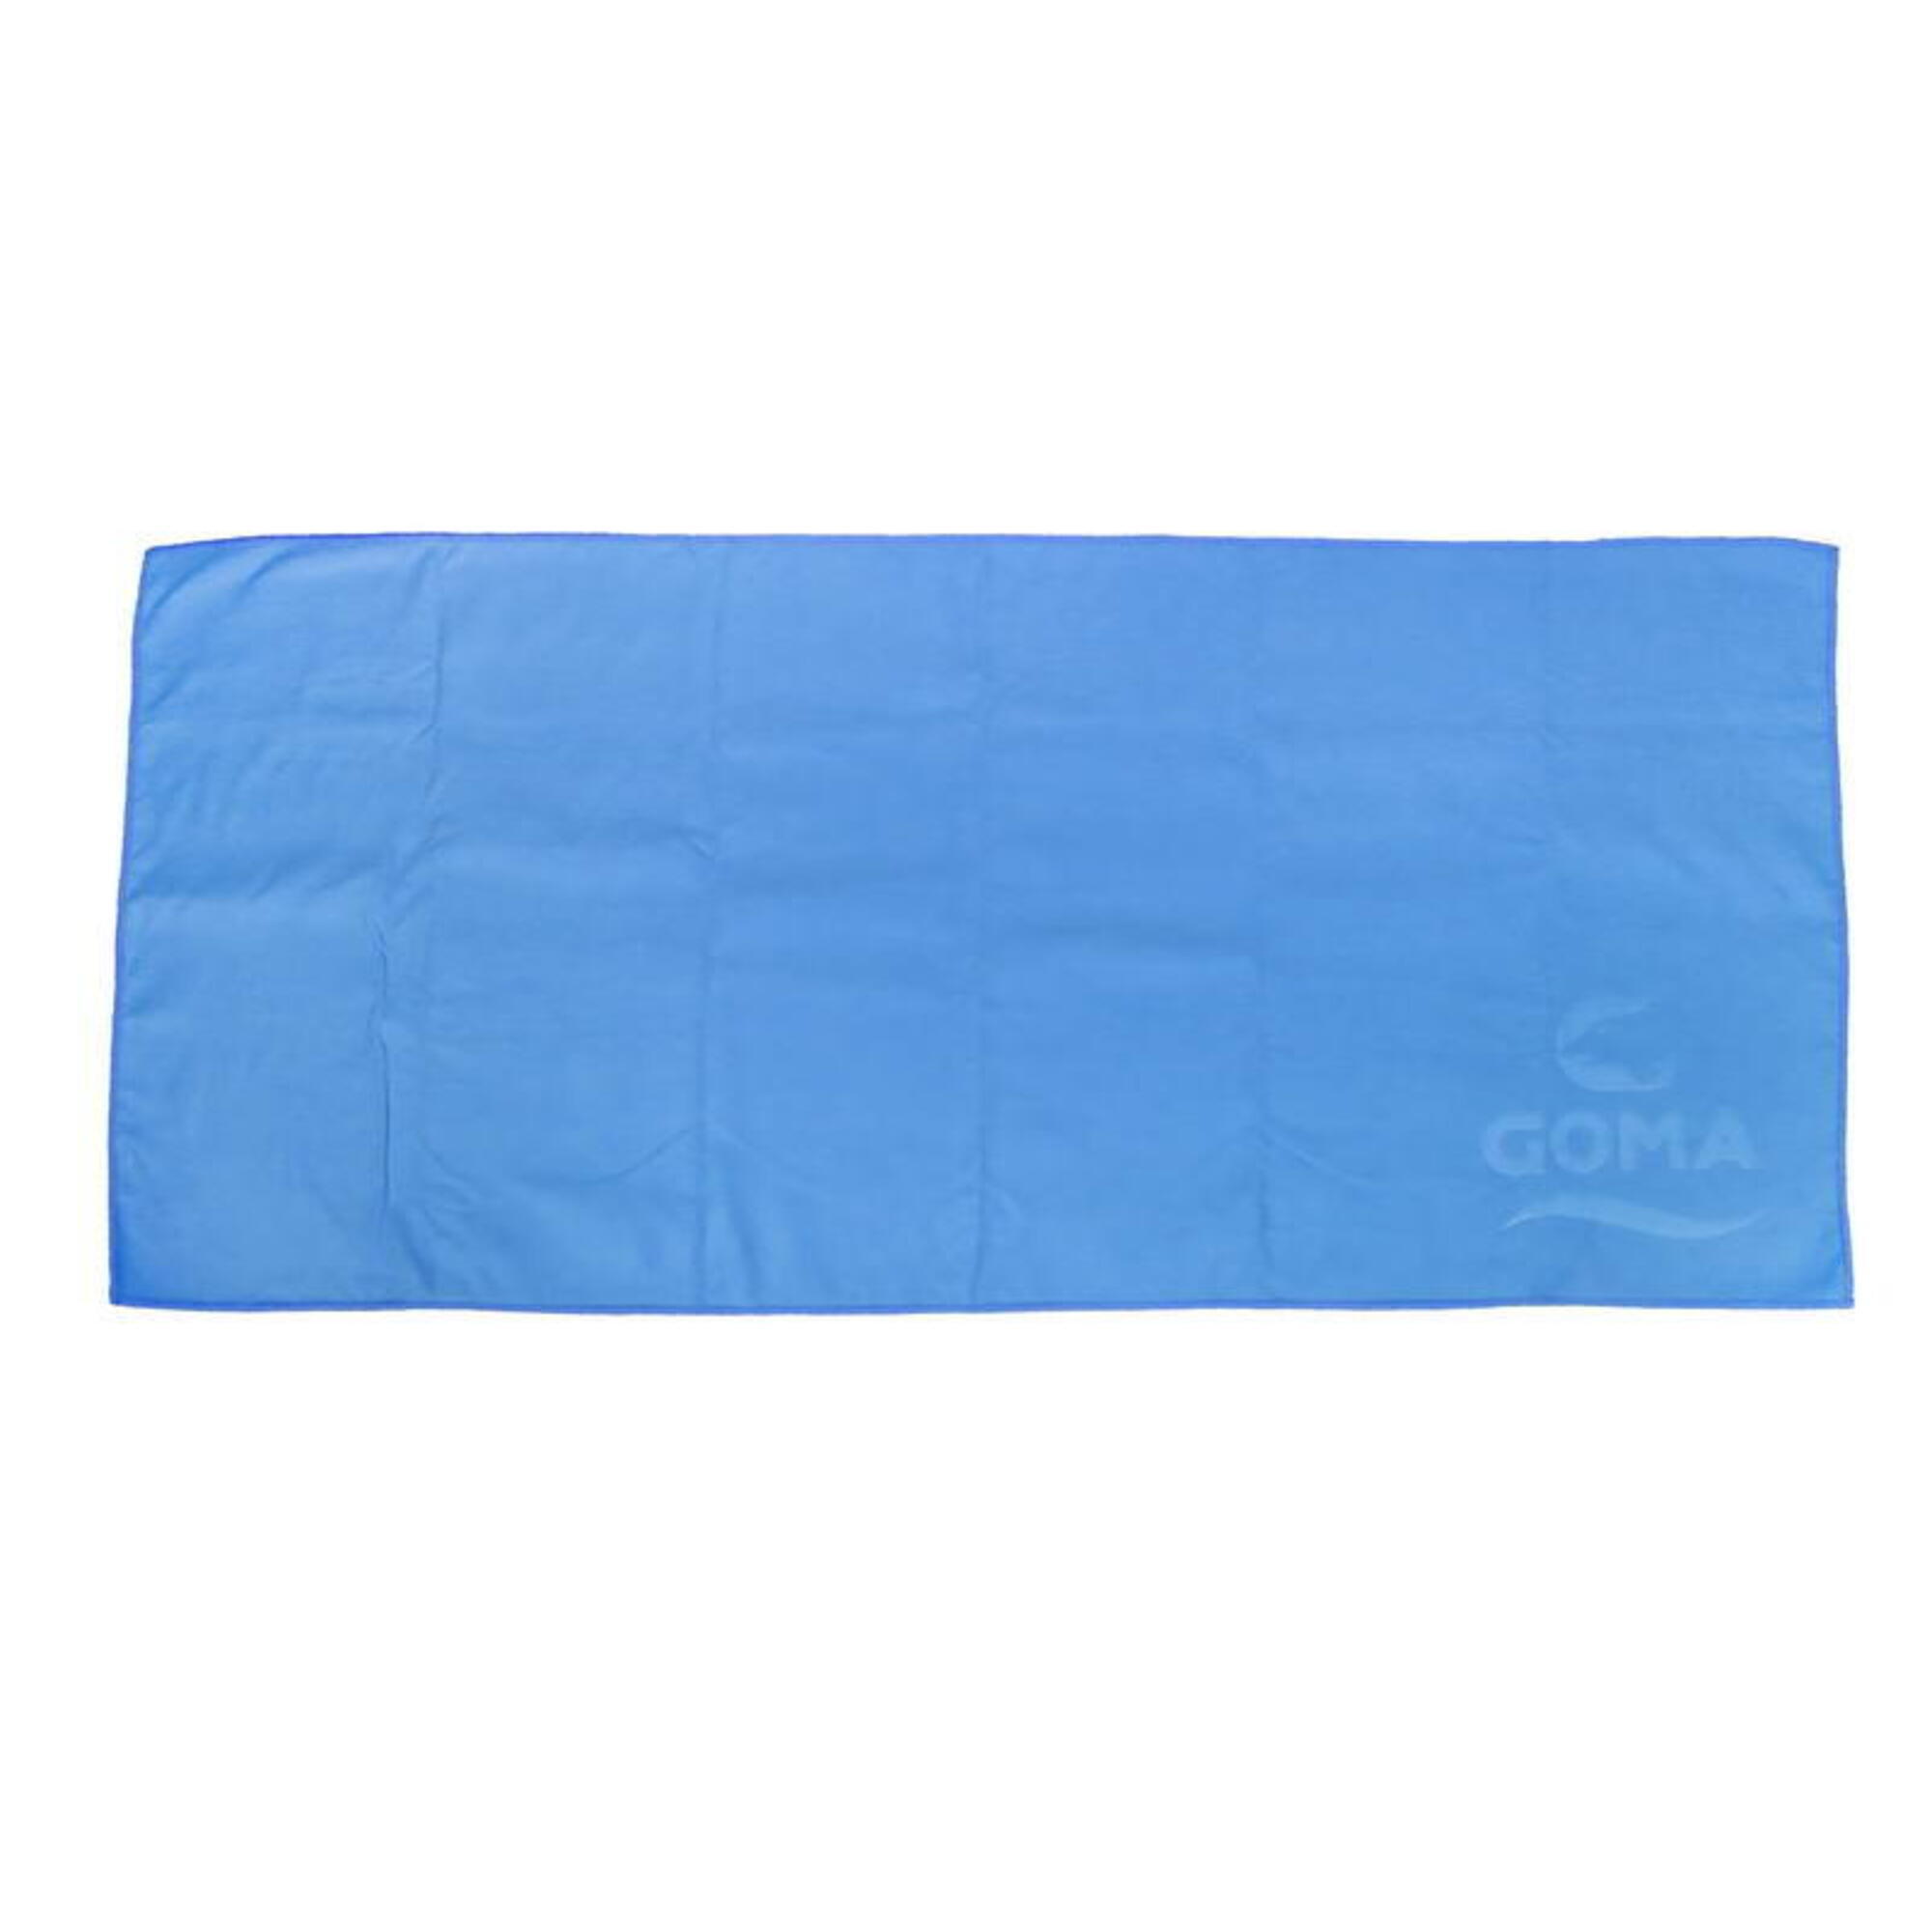 微纖吸水毛巾, 藍色